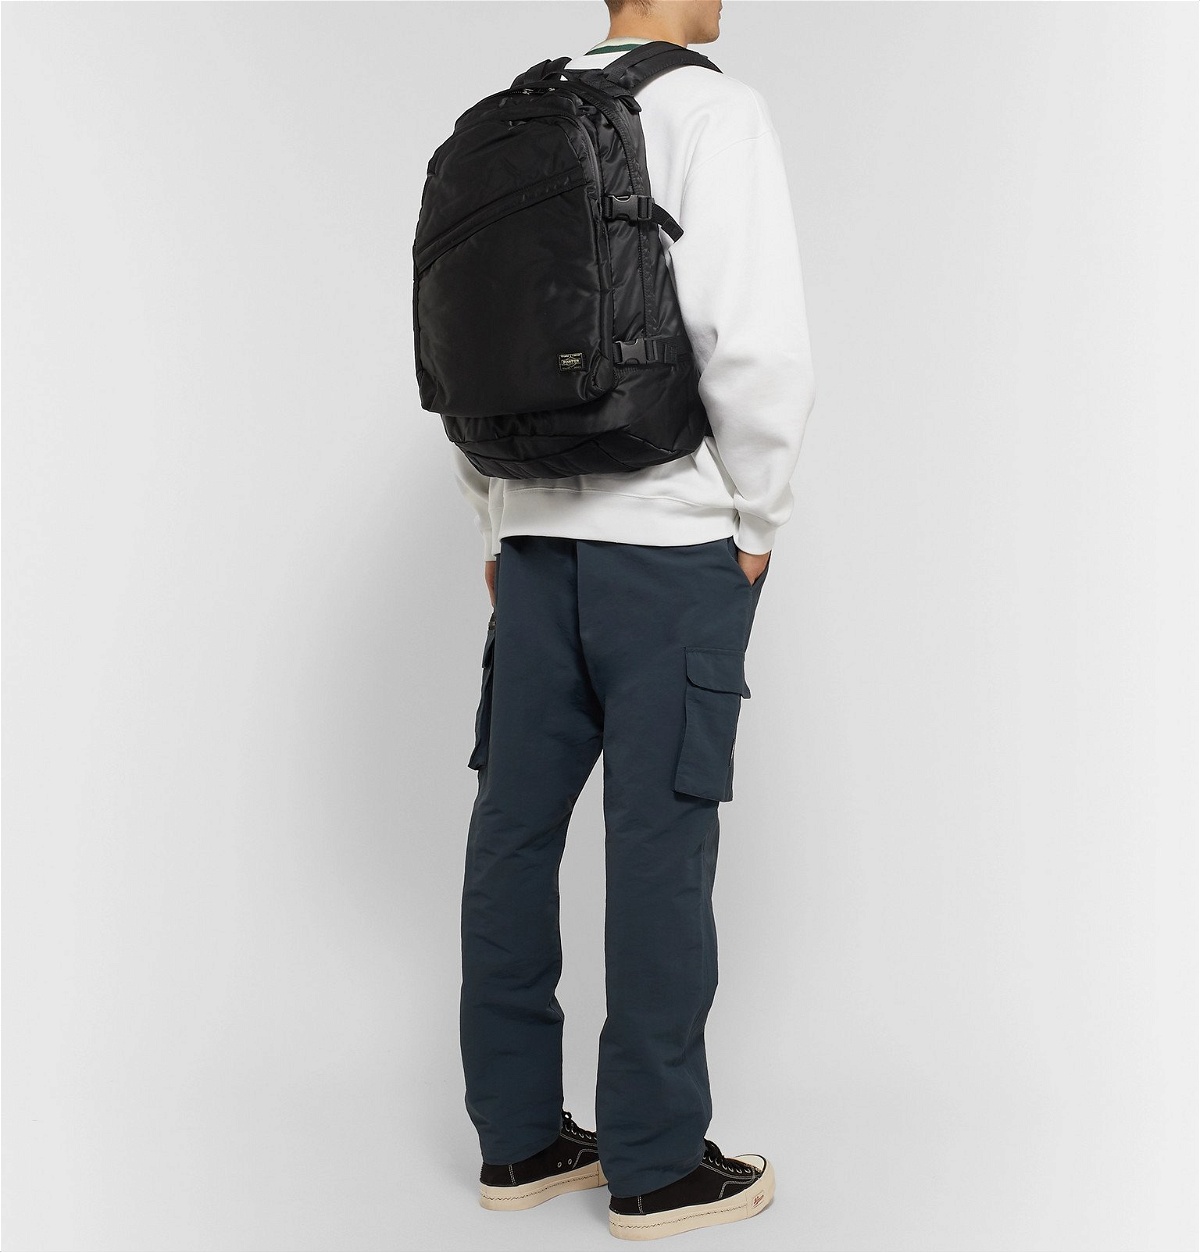 Porter-Yoshida & Co - Tanker Padded Shell Backpack - Black